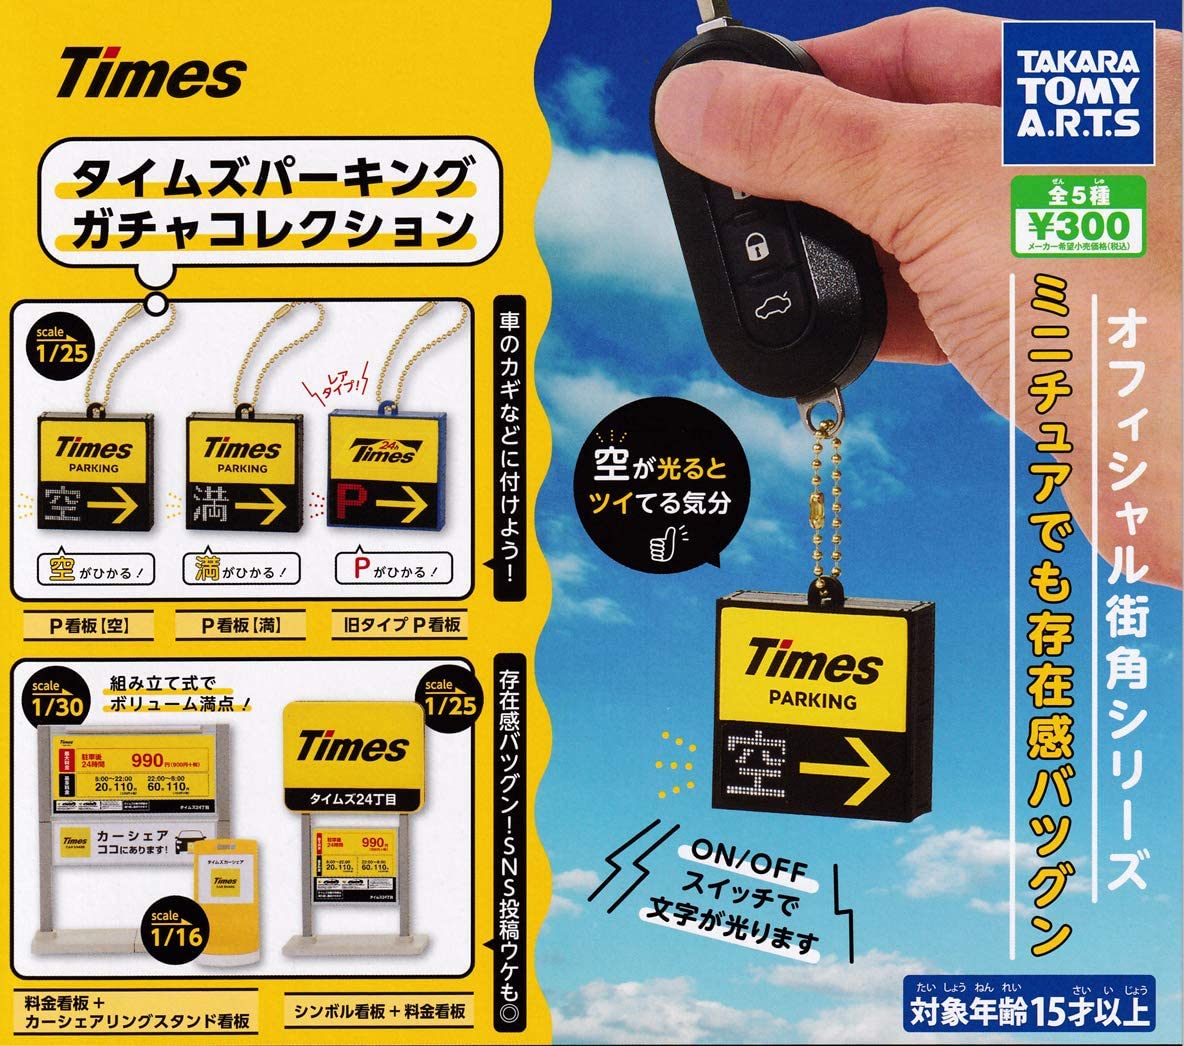 【電池切れ】タカラトミーアーツ Times タイムズパーキング ガチャコレクション ガチャガチャ 全5種セット（フルコンプ）